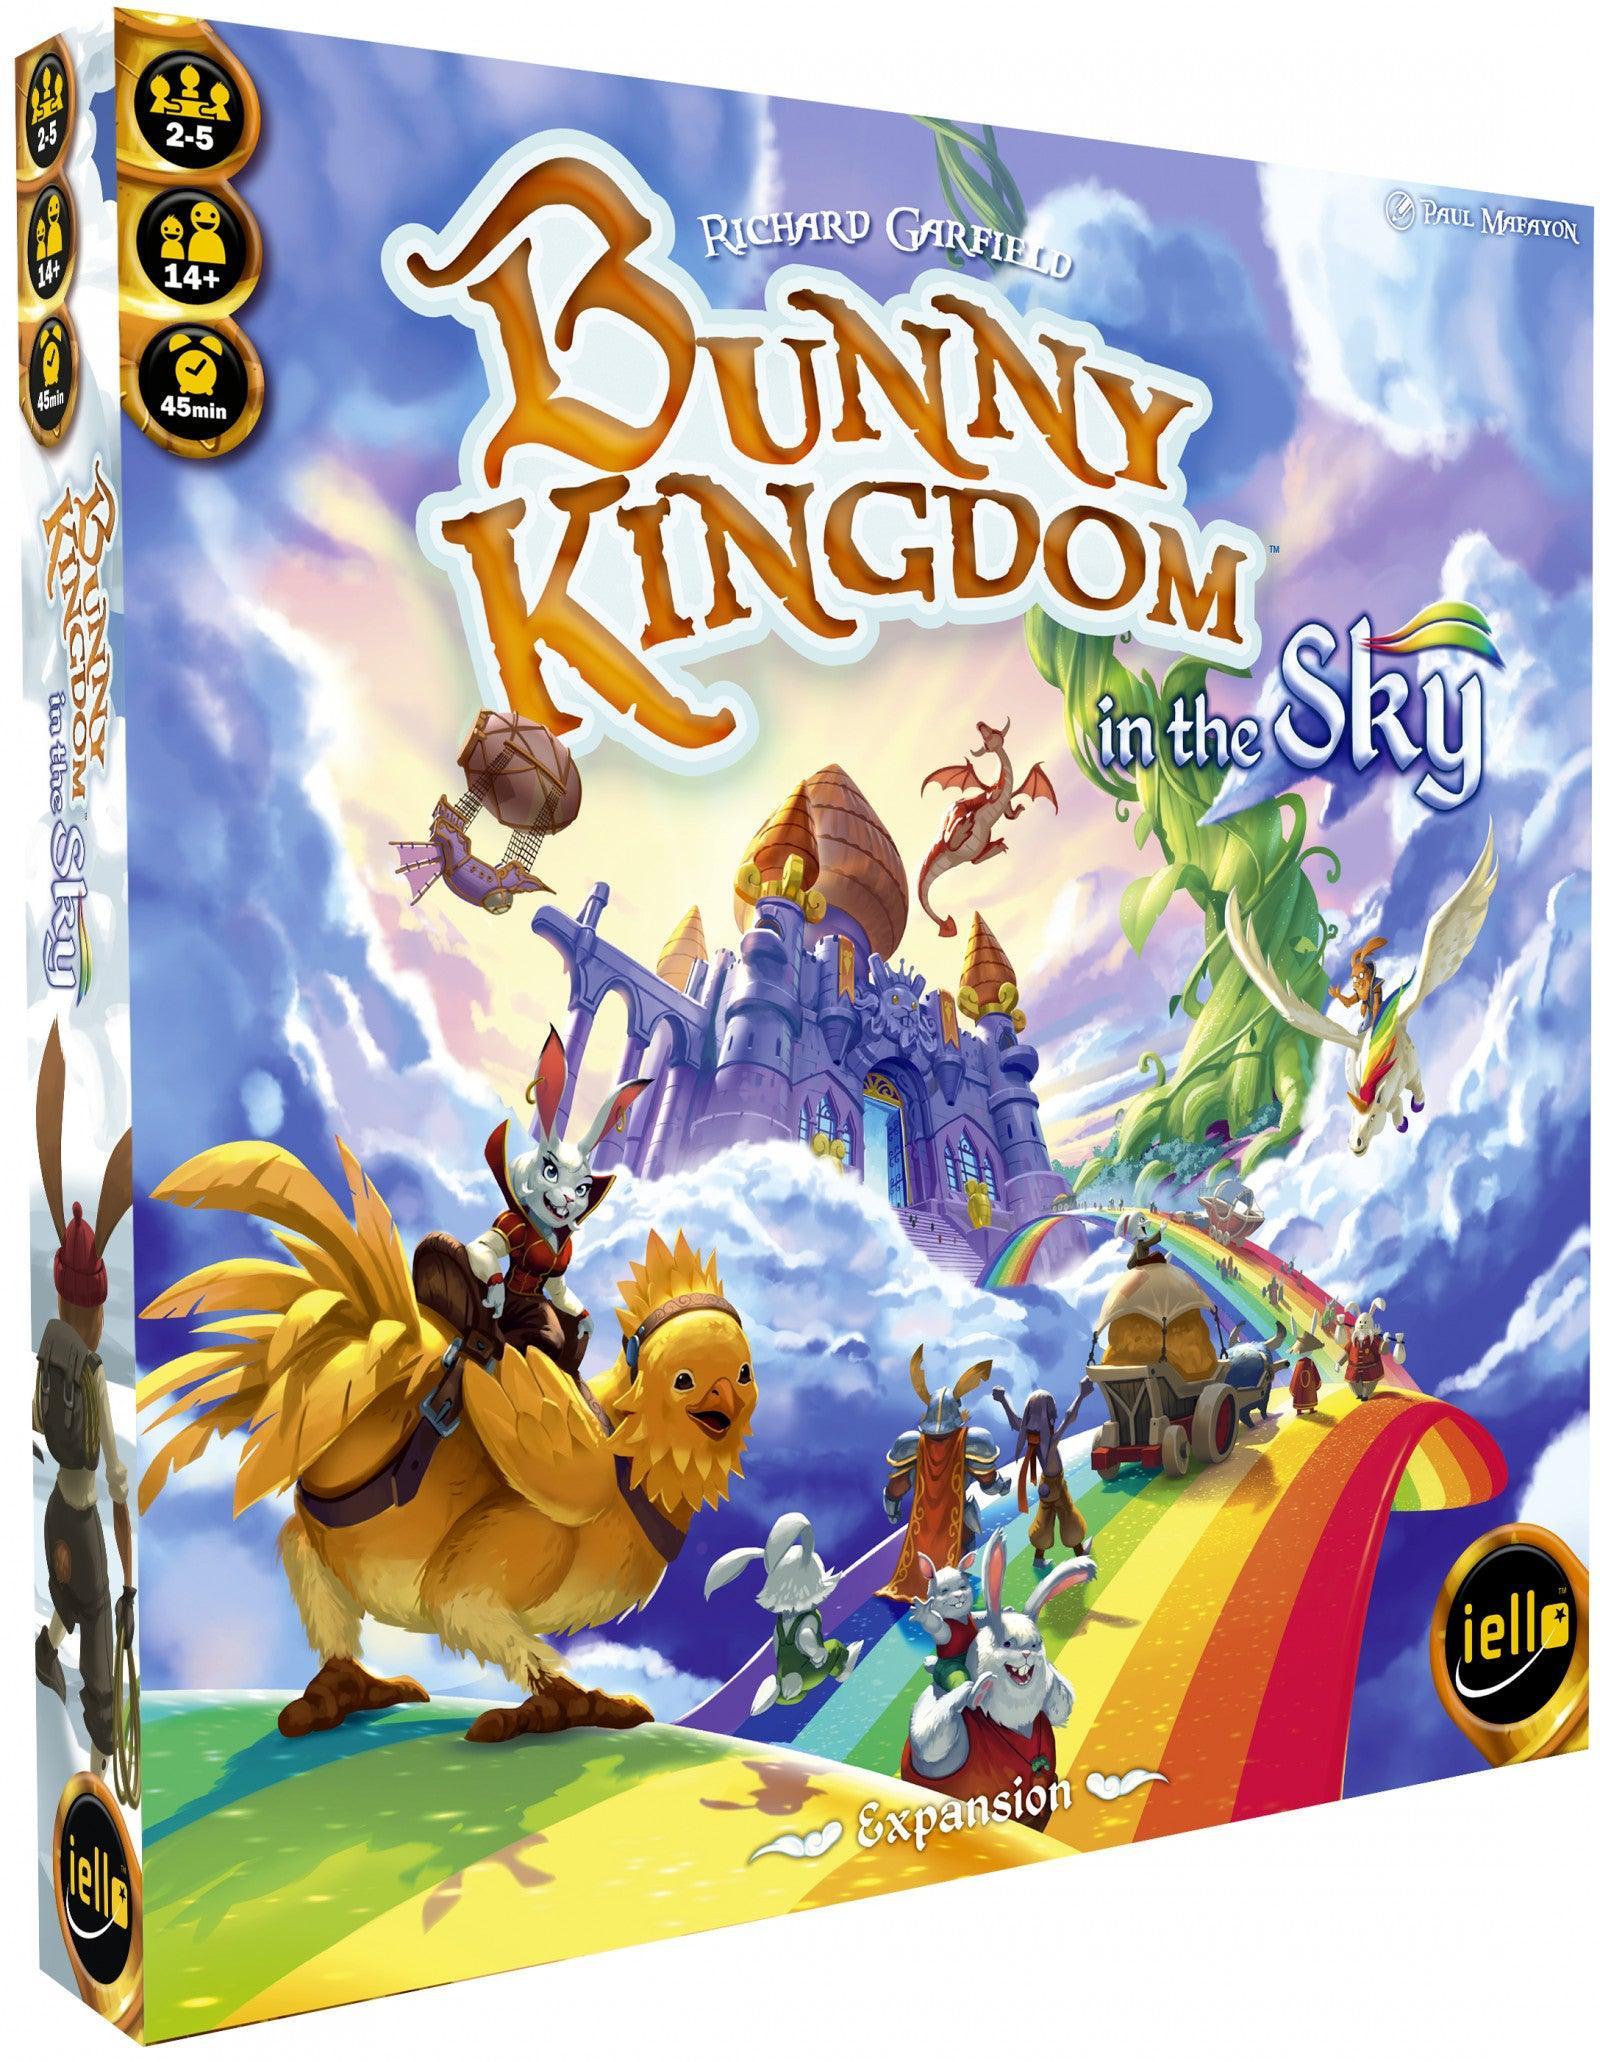 VR-64429 Bunny Kingdom in the Sky Expansion - Iello - Titan Pop Culture